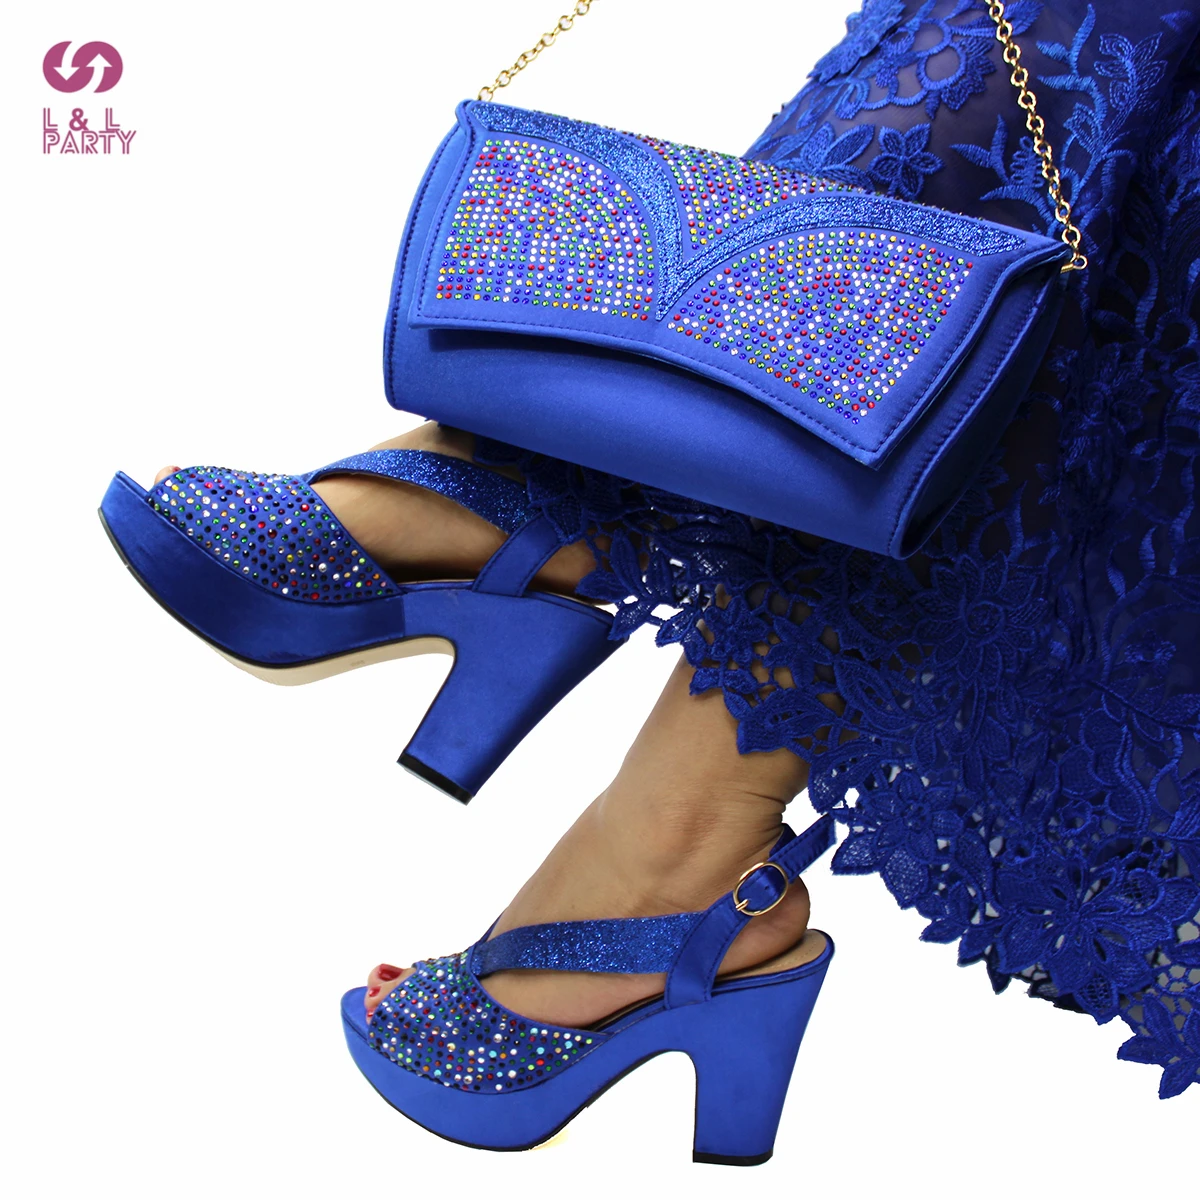 Босоножки женские на каблуке ярко-синего цвета | Обувь